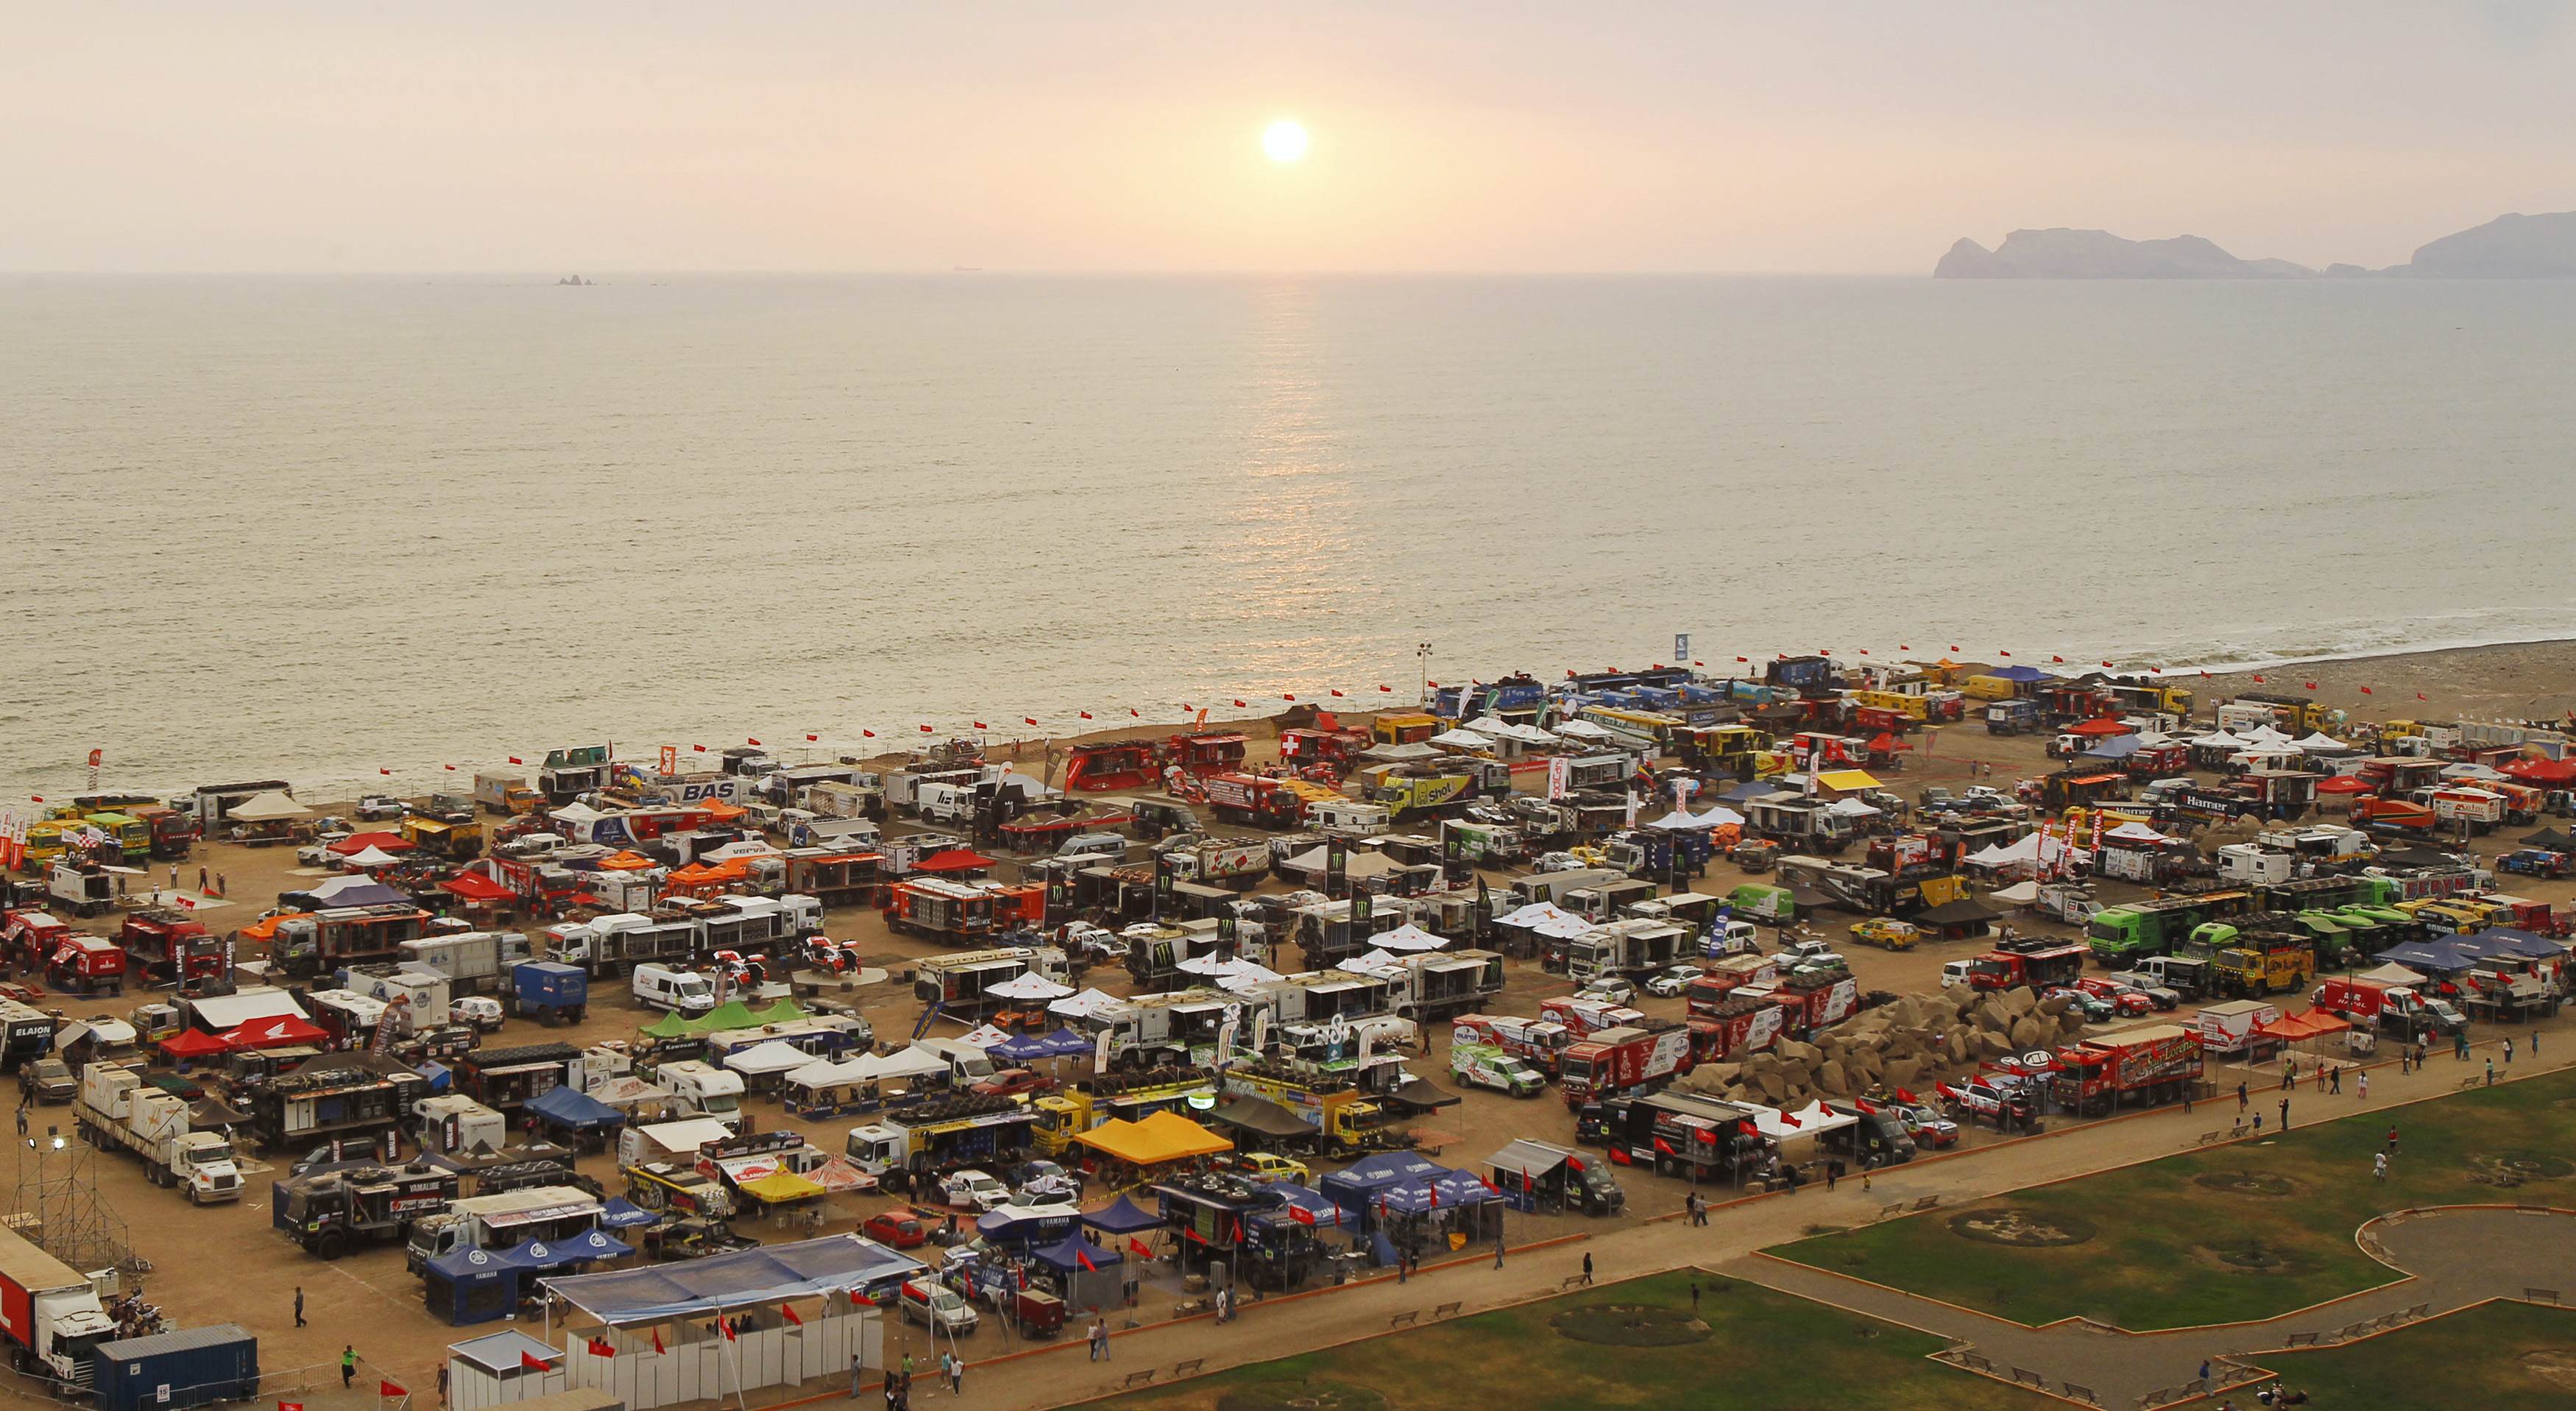 Ράλλυ Dakar 2013: Το preview μιας μεγάλης περιπέτειας